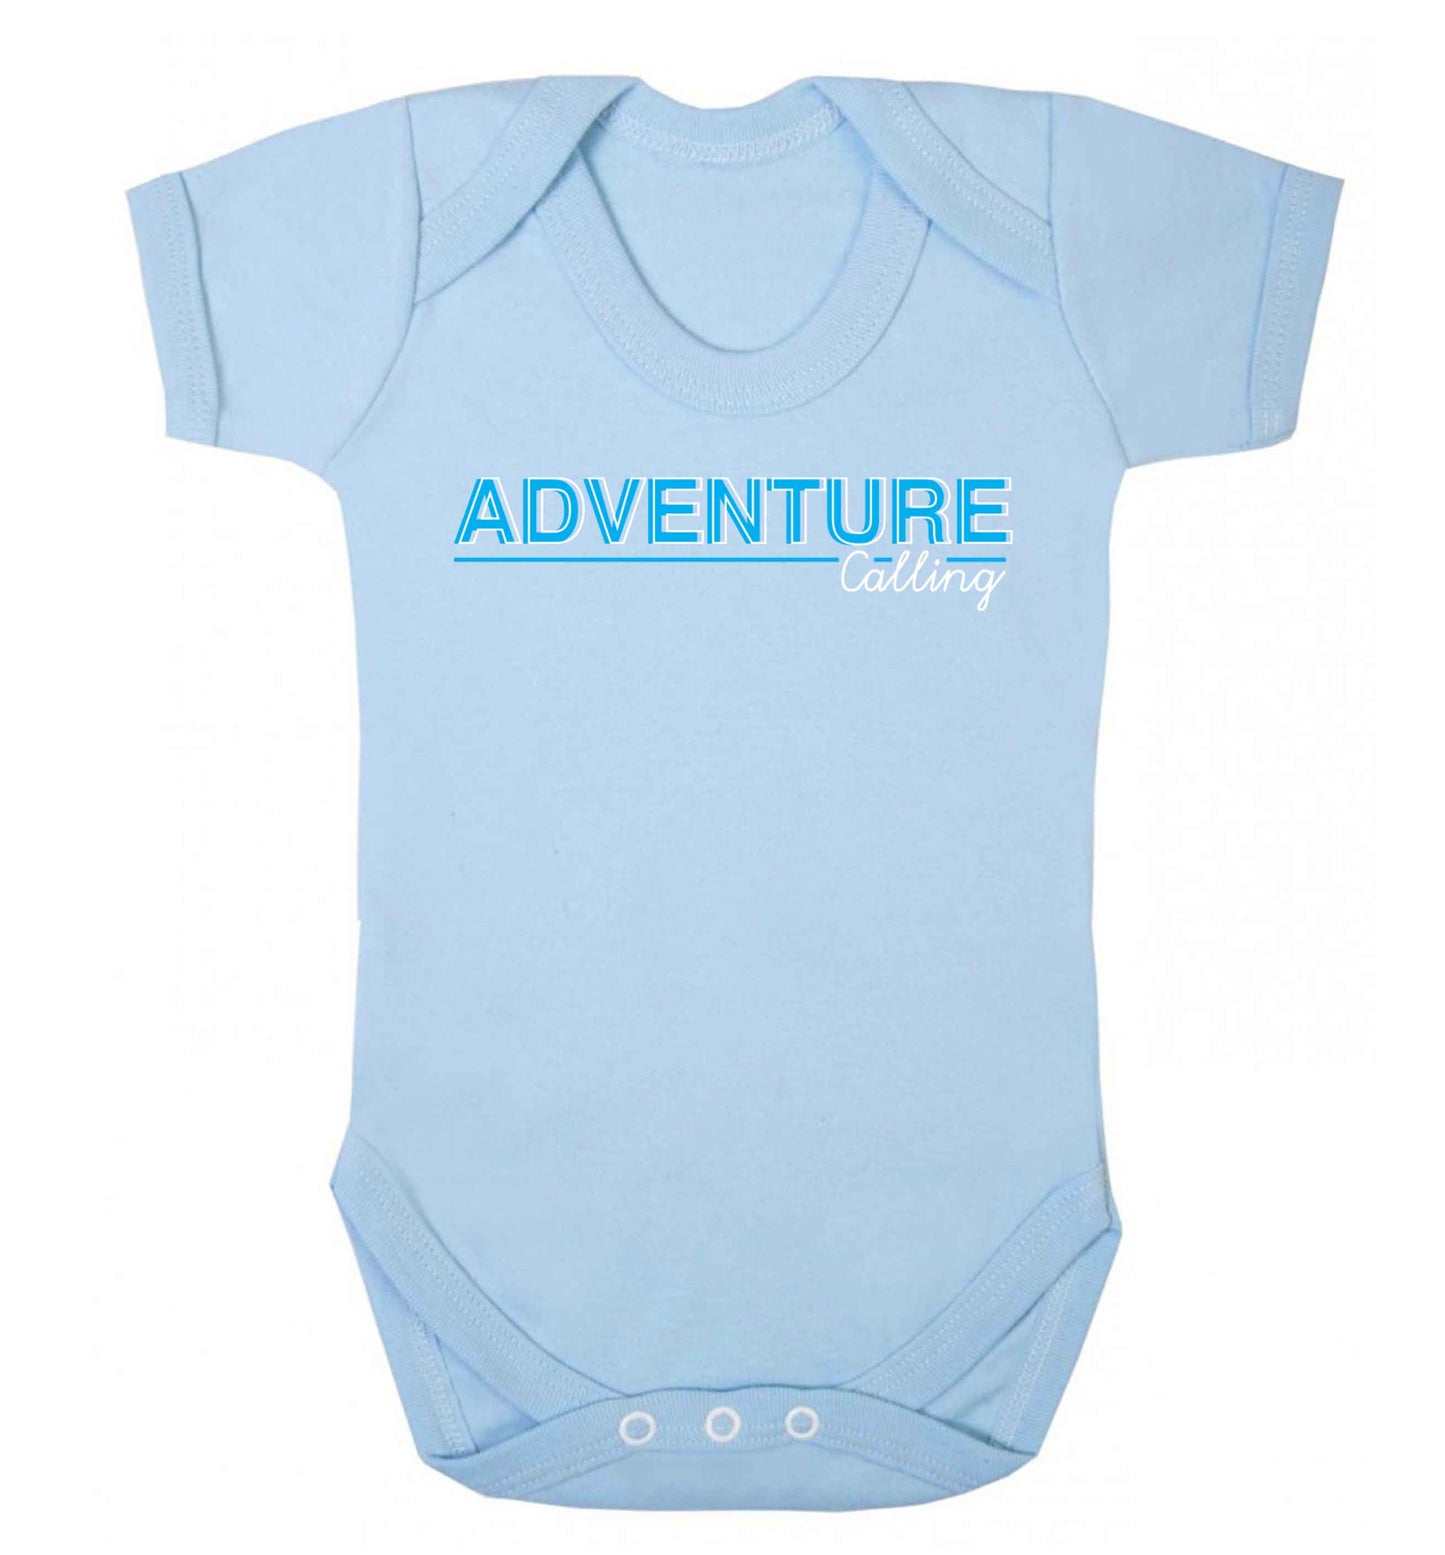 Adventure calling Baby Vest pale blue 18-24 months